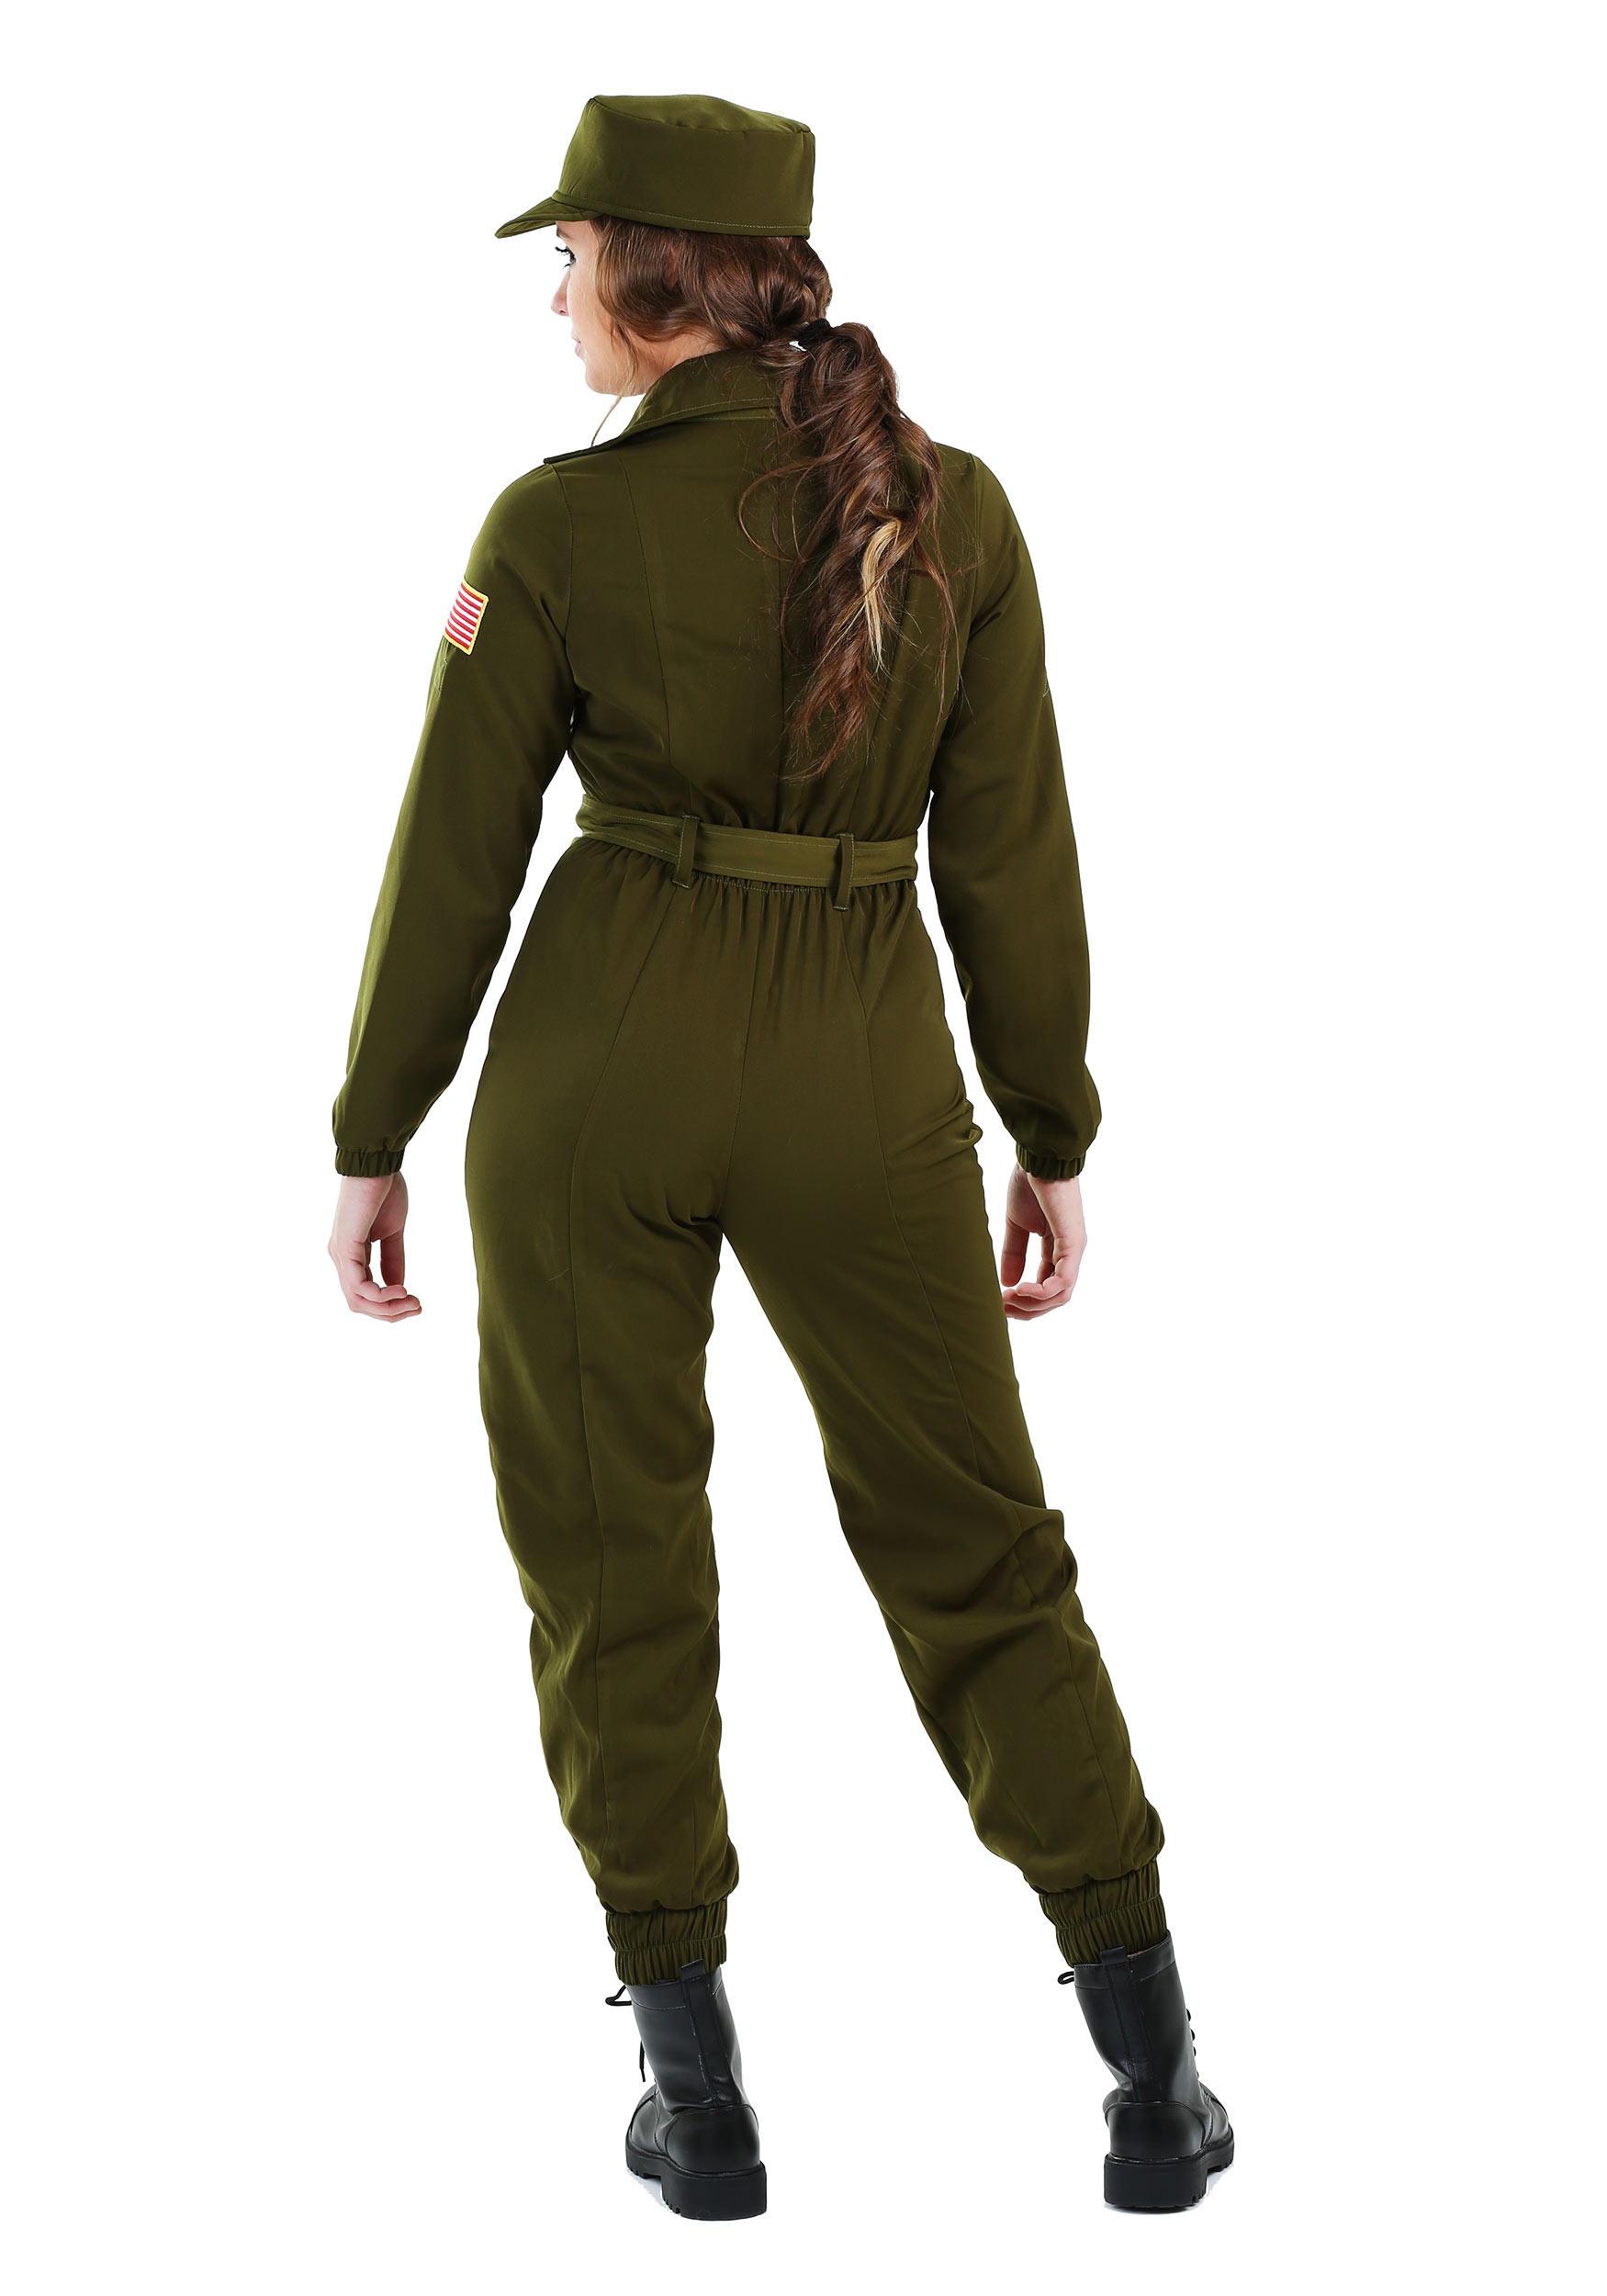 Army Flightsuit Fancy Dress Costume For Women , Army Uniform Fancy Dress Costumes